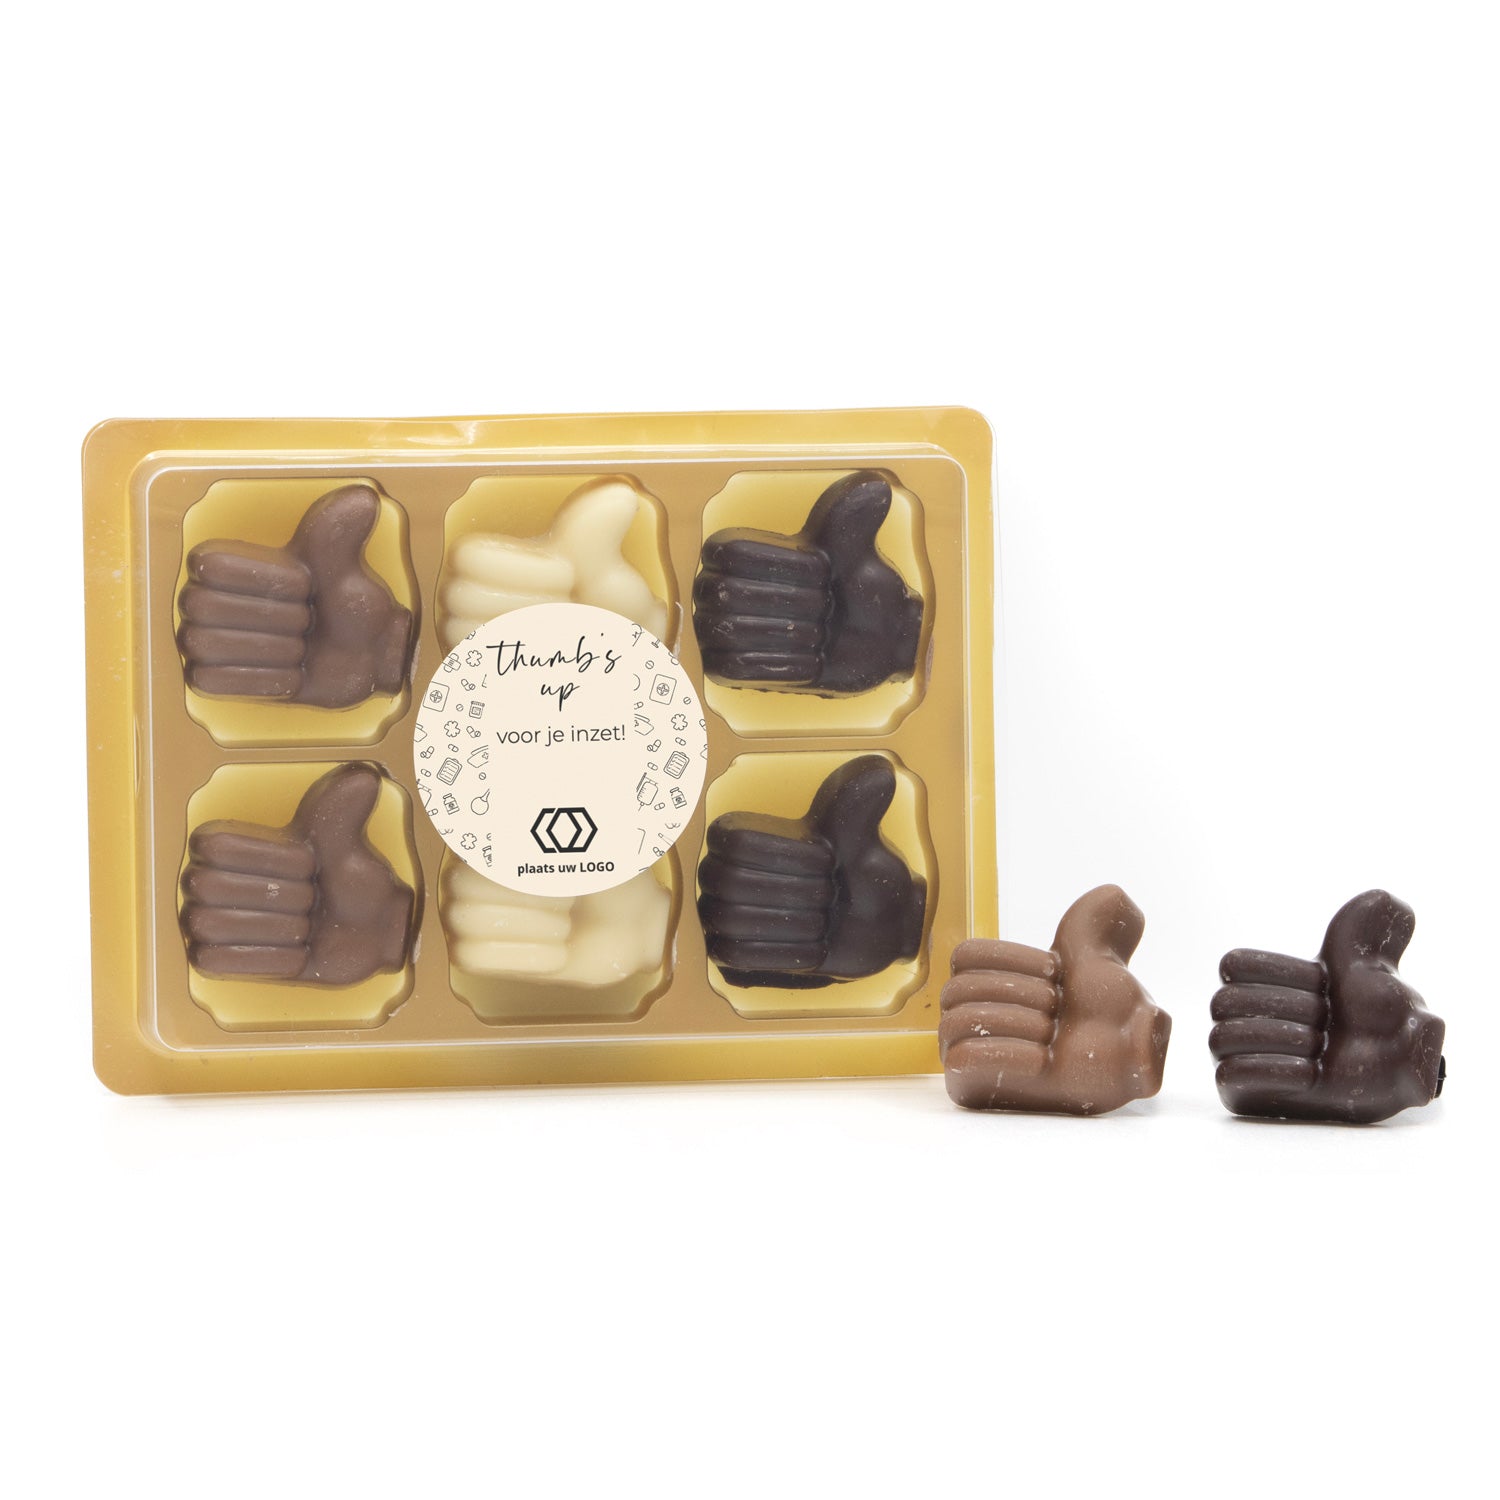 Doosje met 6 chocoladeduimpjes - Verpleging - Bedankjes.nl